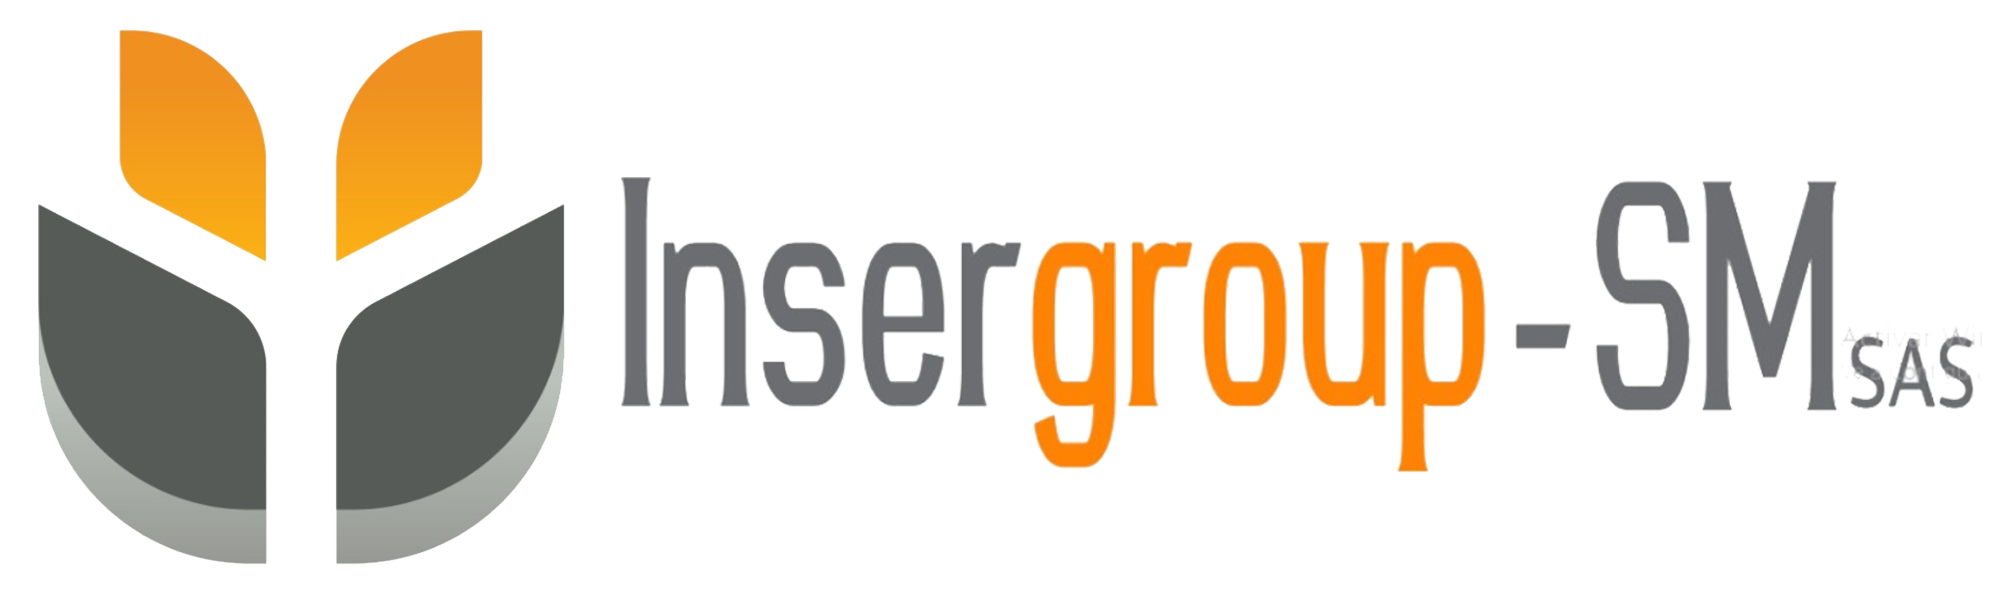 Insergroup sm Grupo integral de servicios